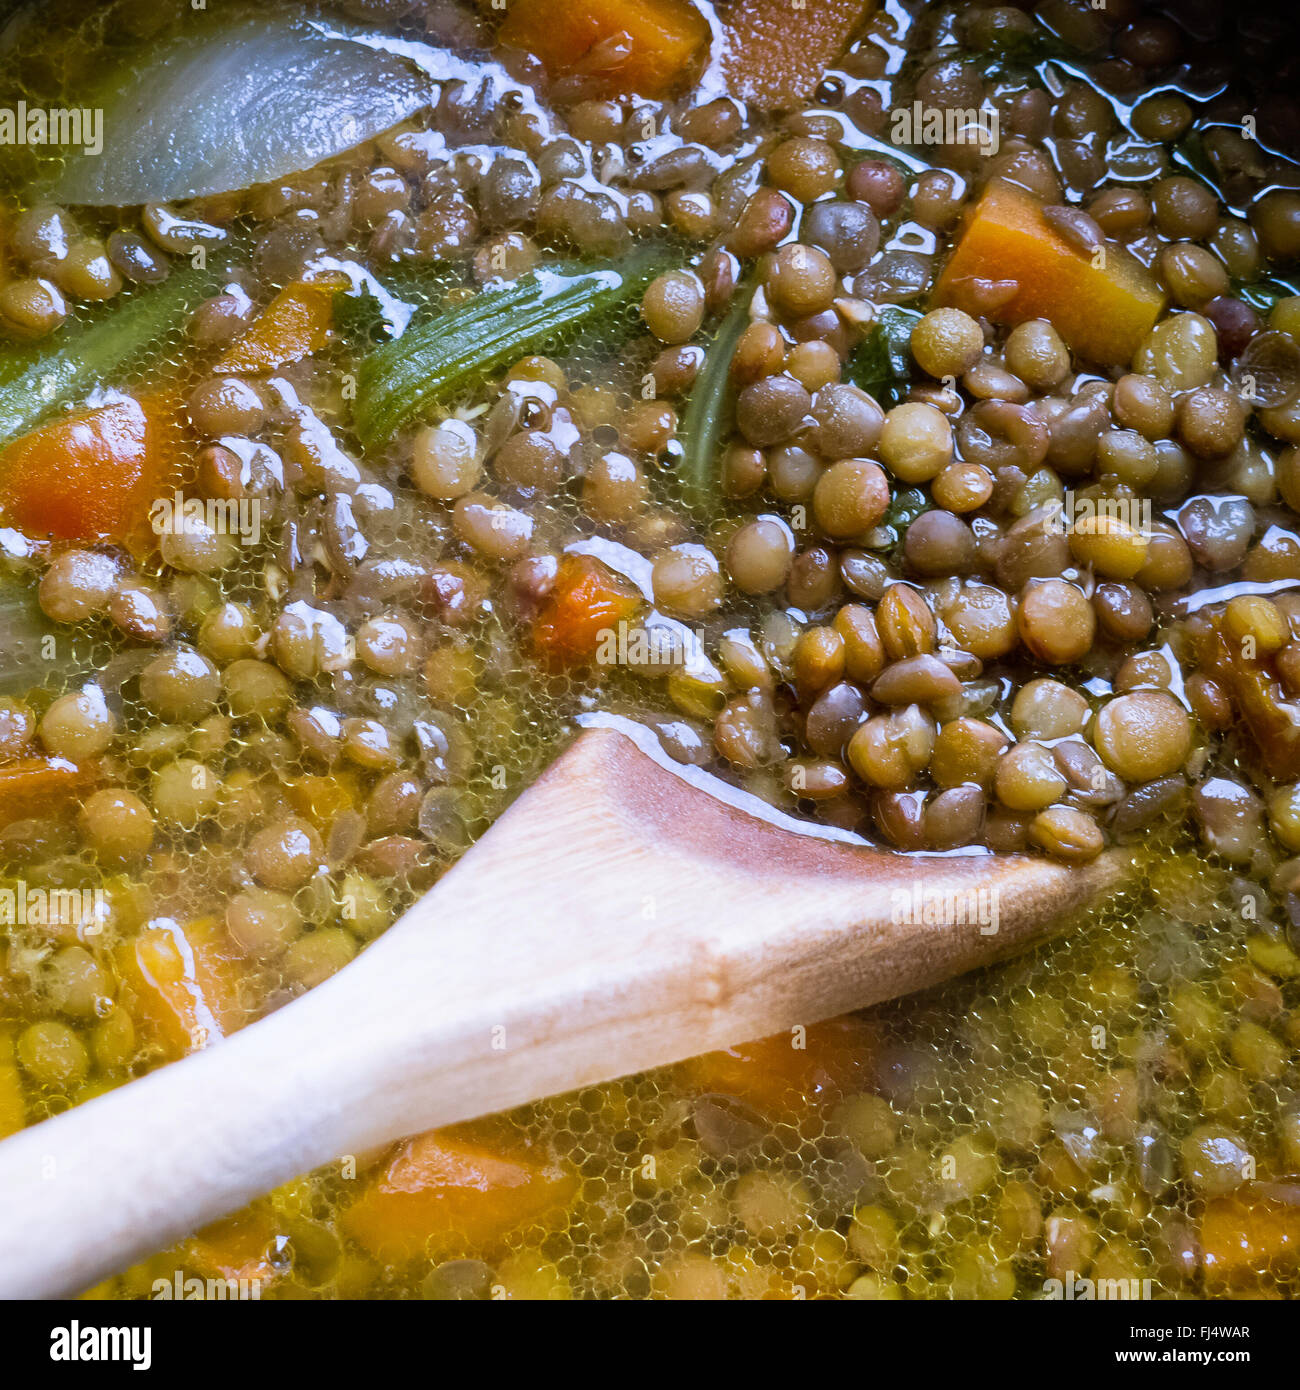 Lentil soup. Stock Photo